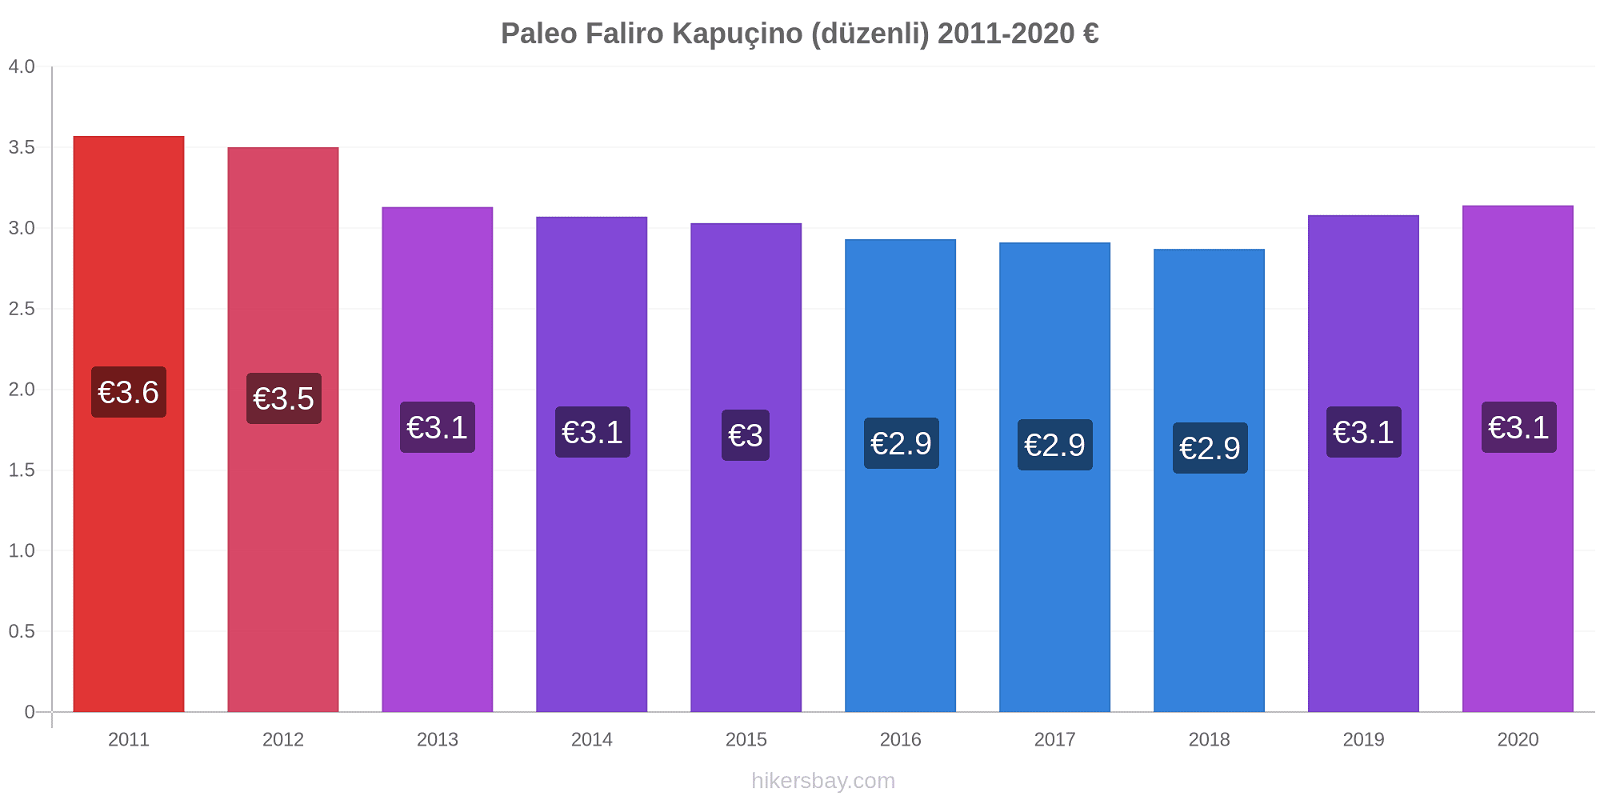 Paleo Faliro fiyat değişiklikleri Kapuçino (düzenli) hikersbay.com